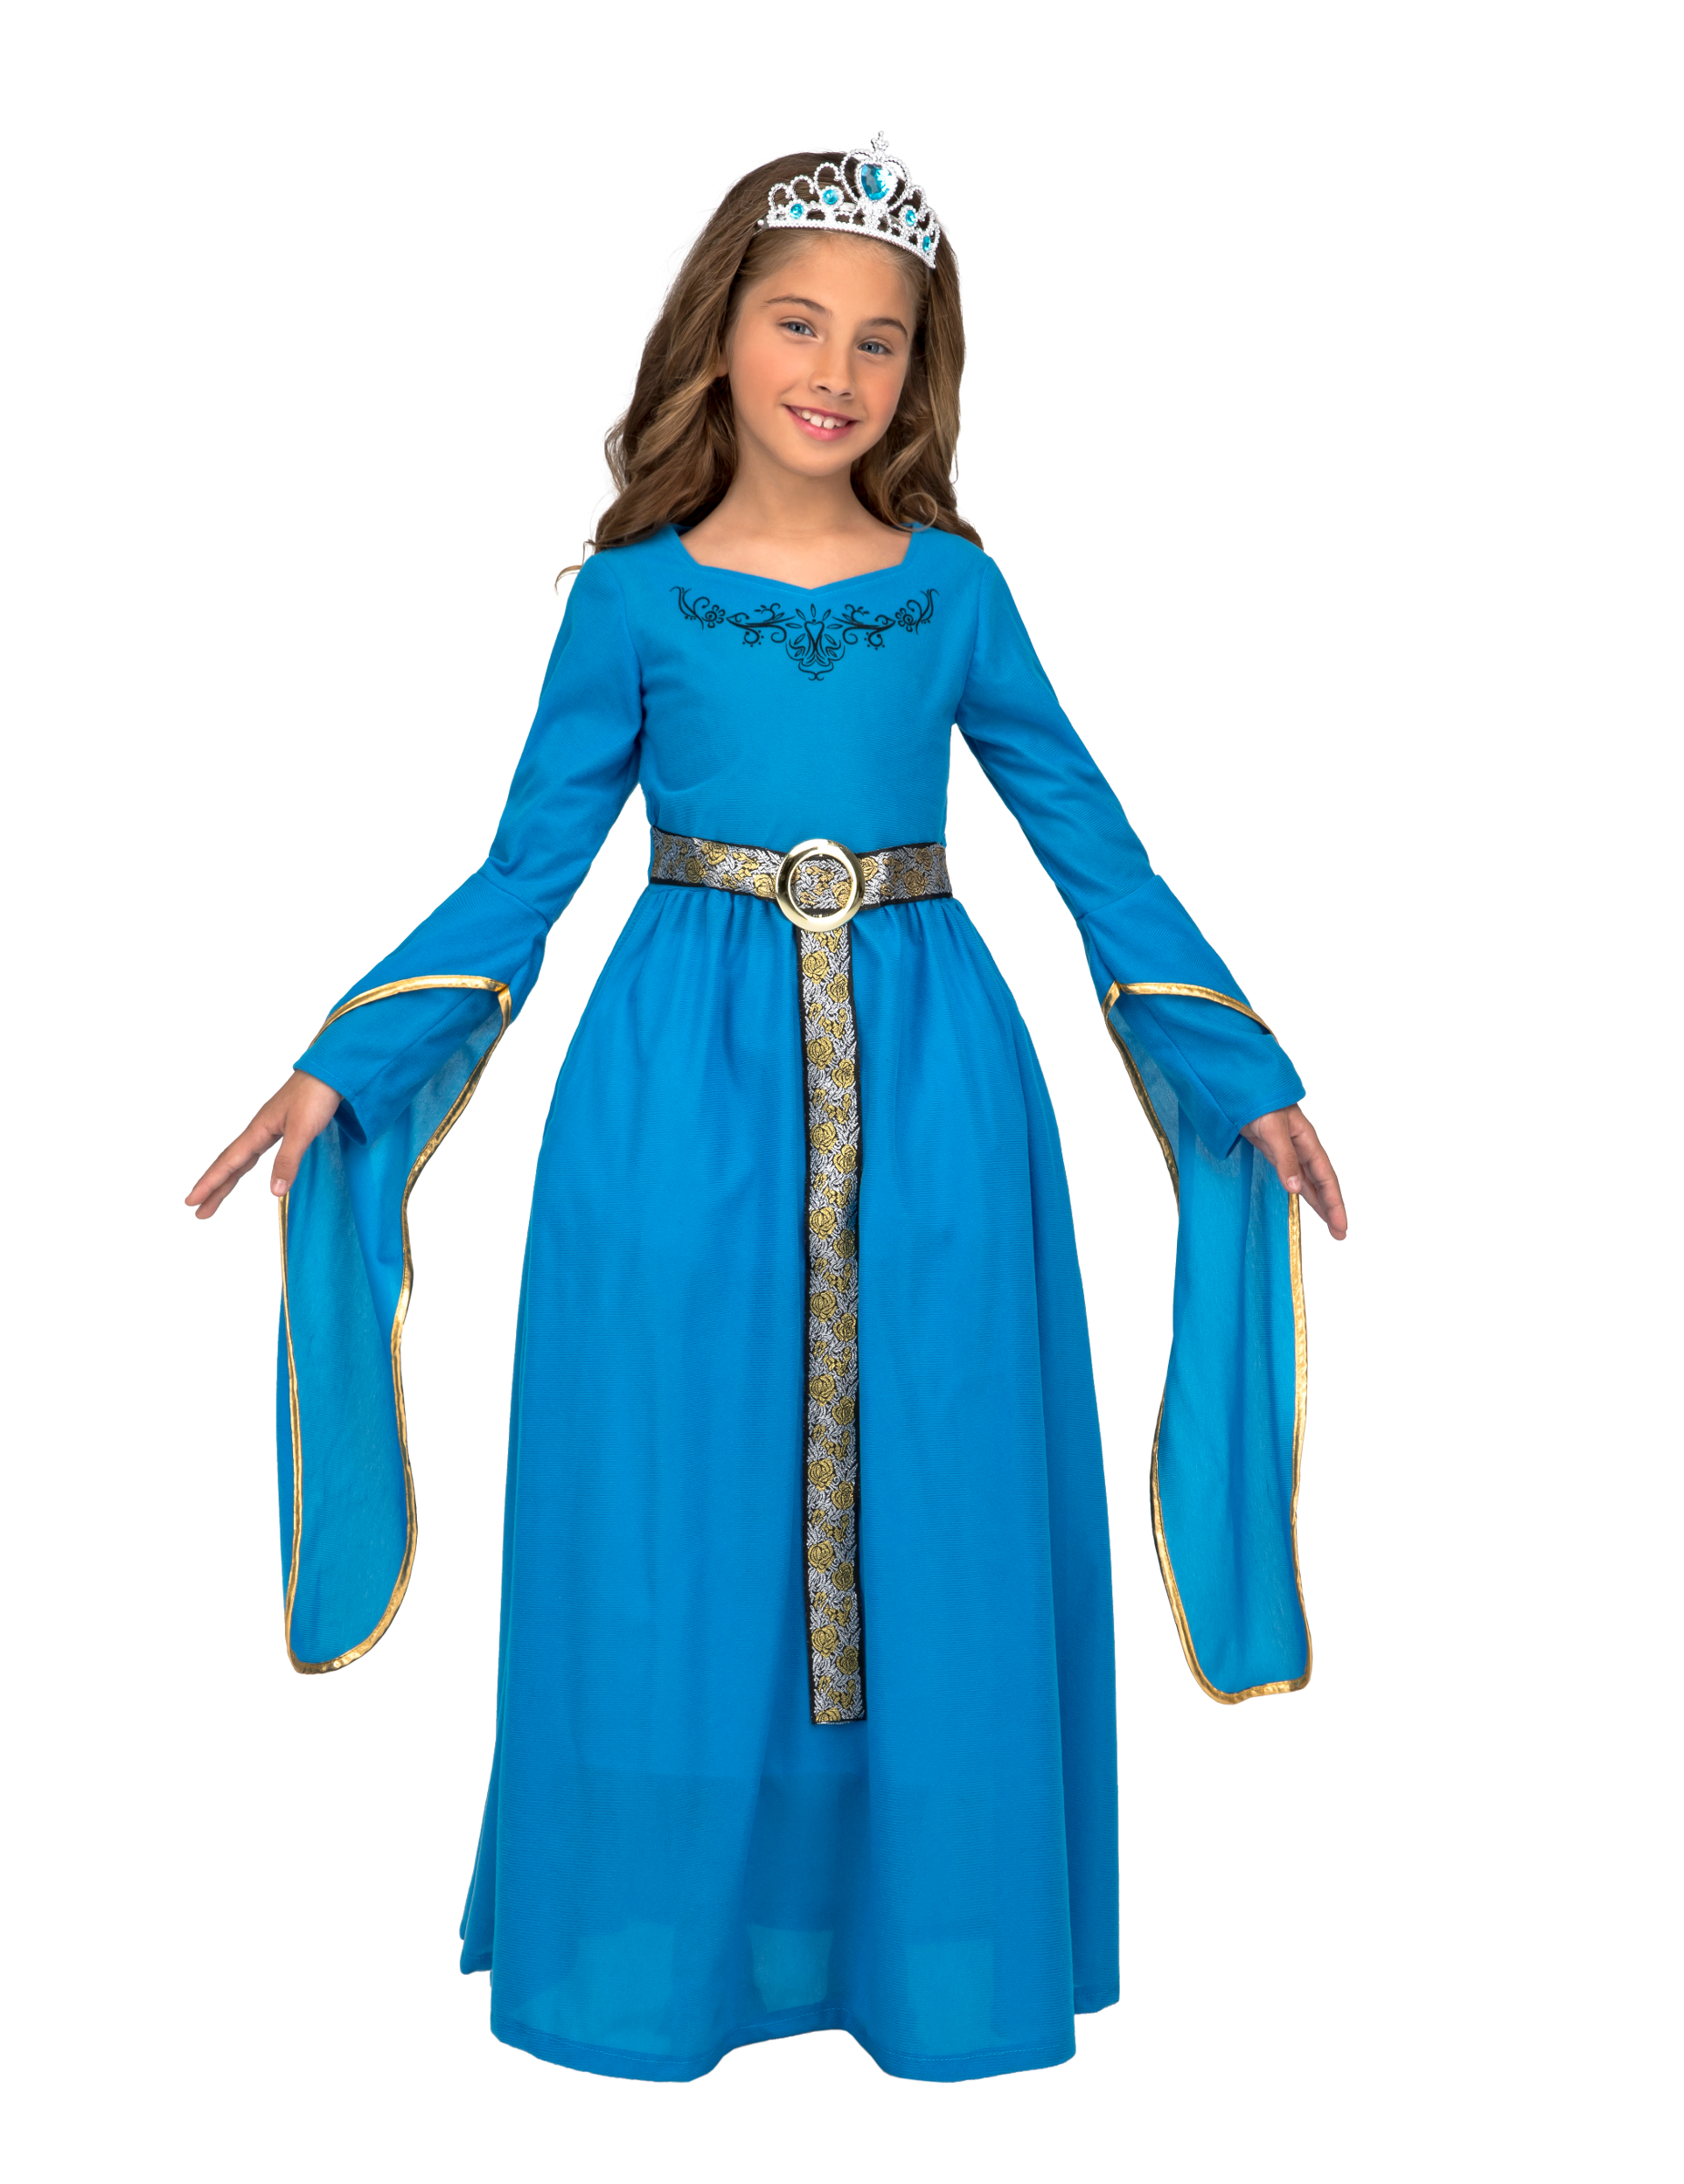 Mittelalter-Prinzessin Kostüm für Mädchen Faschingskostüm blau von VIVING COSTUMES / JUINSA